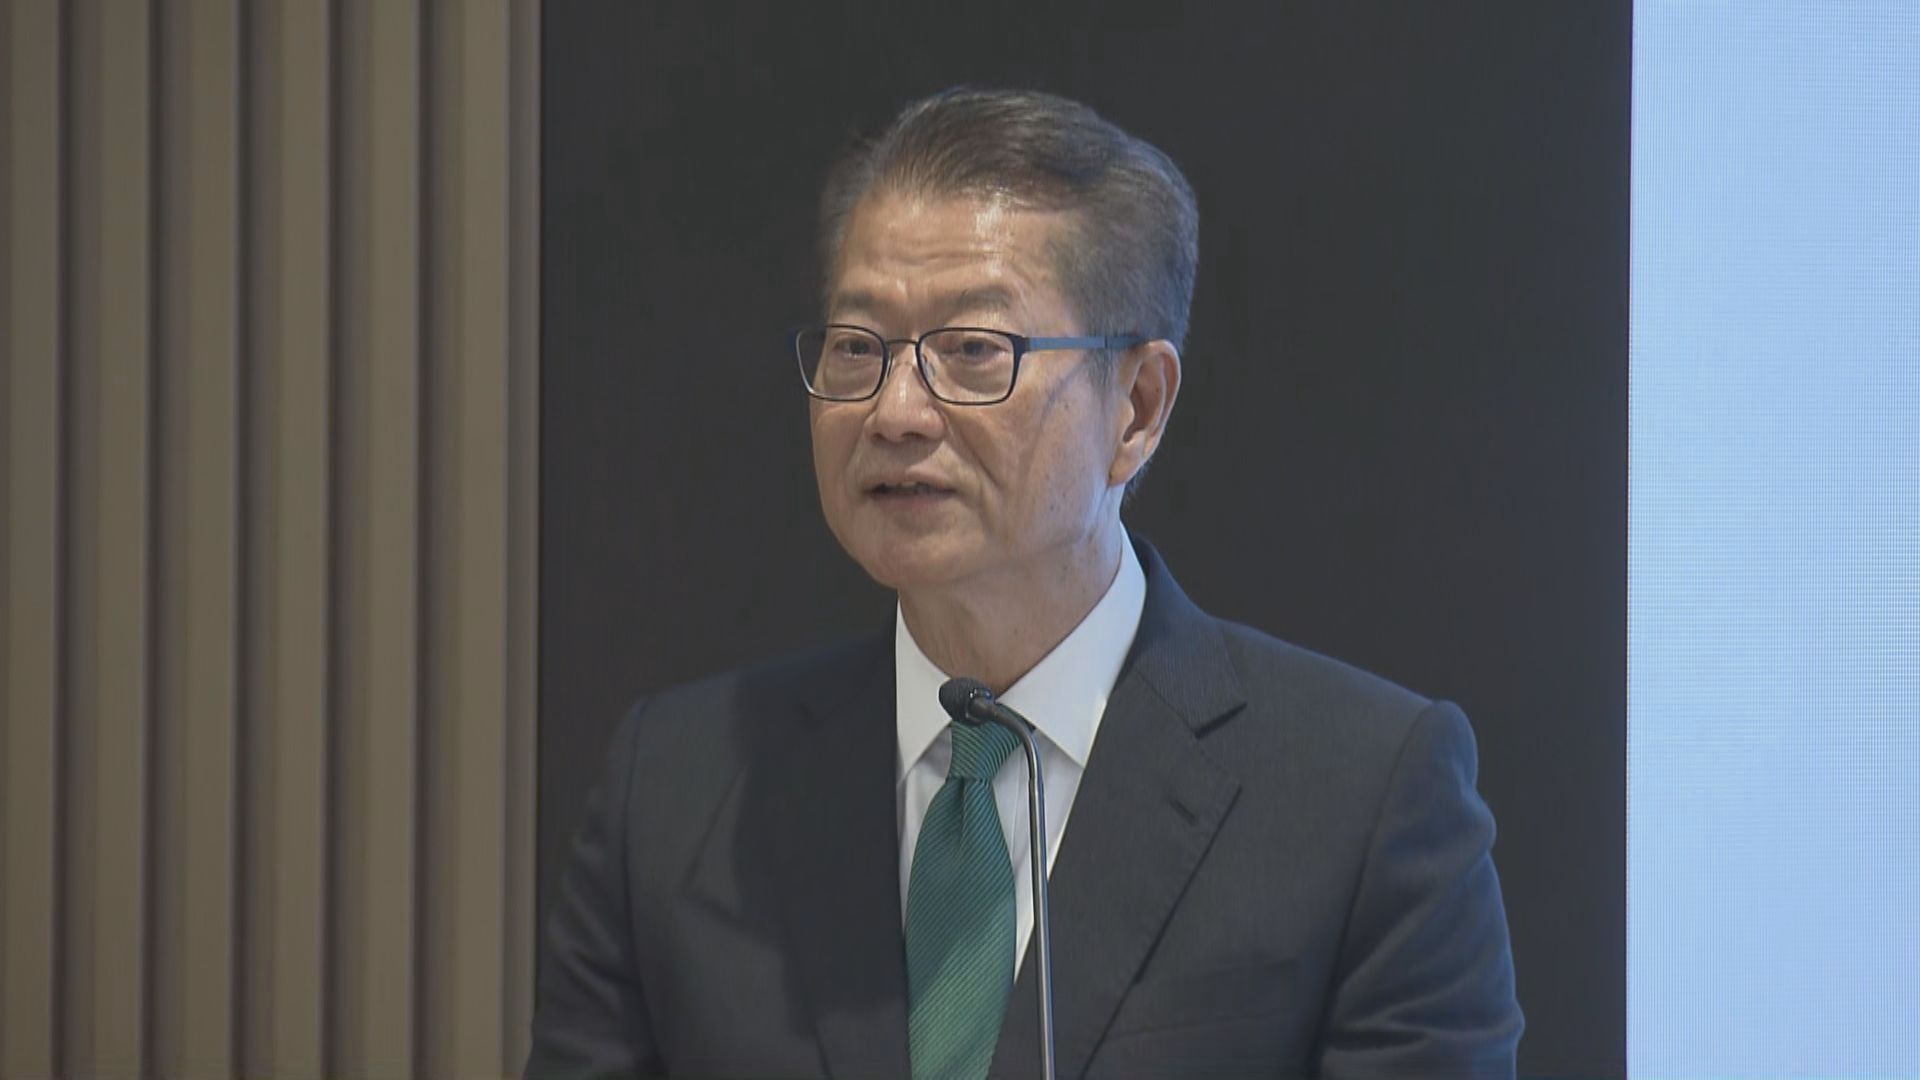 【可持續金融】陳茂波:本港需把握轉型金融發展機遇